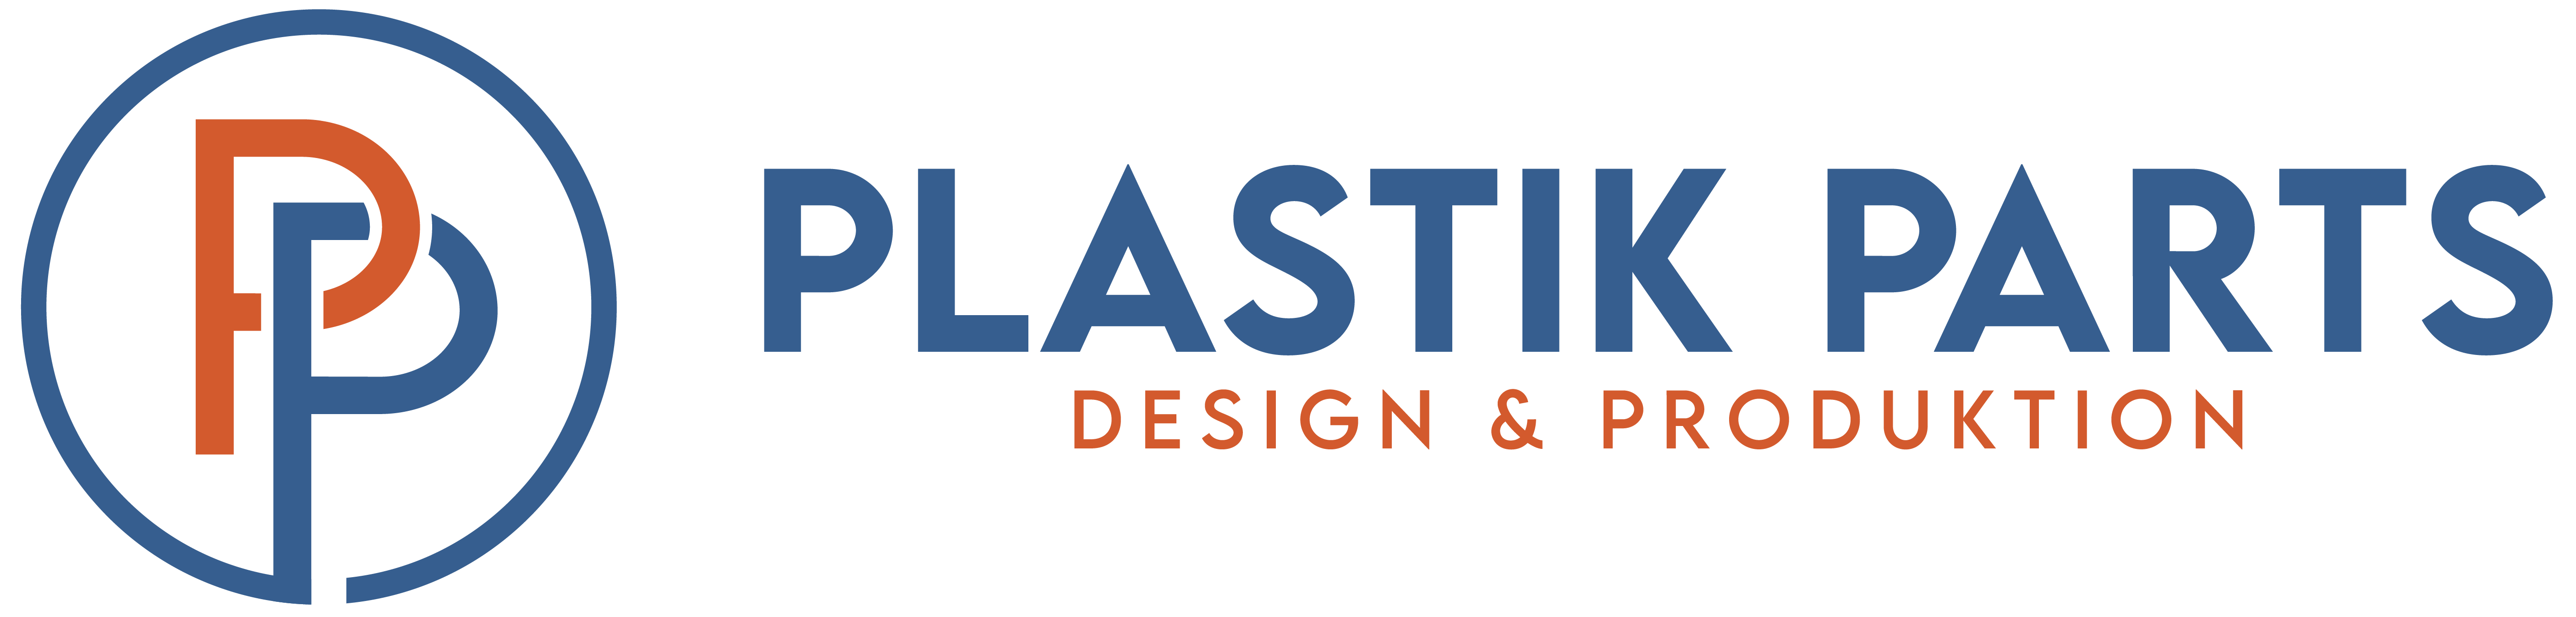 Plastik Parts - Design & Produktion - 5 x Einkaufswagenchip